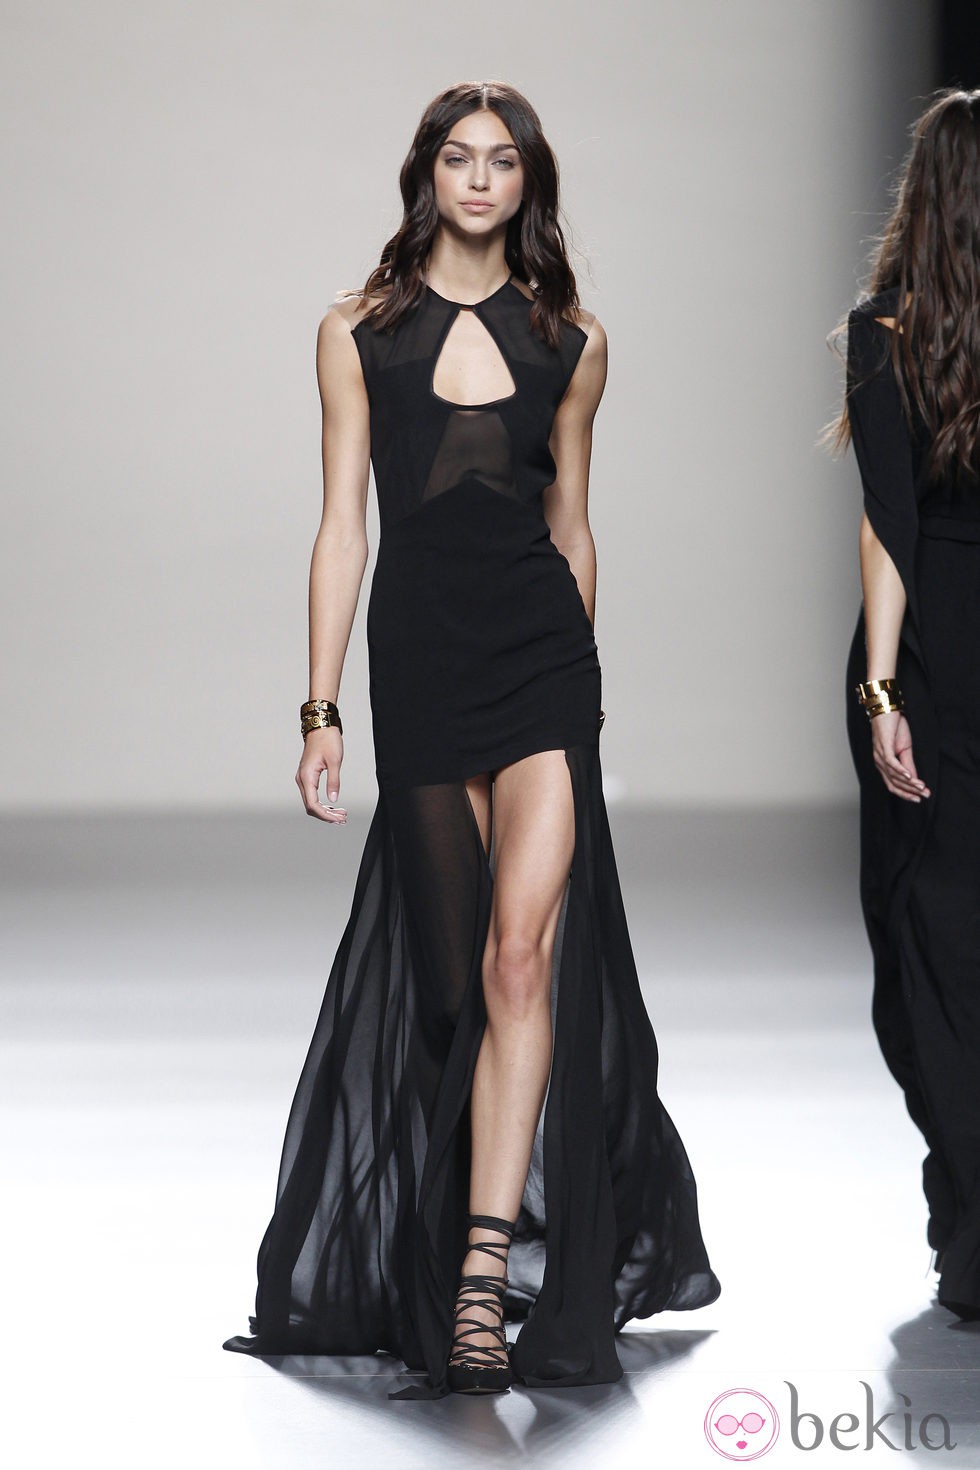 Vestido negro de noche de la colección primavera/verano 2014 de Juanjo Oliva en Madrid Fashion Week